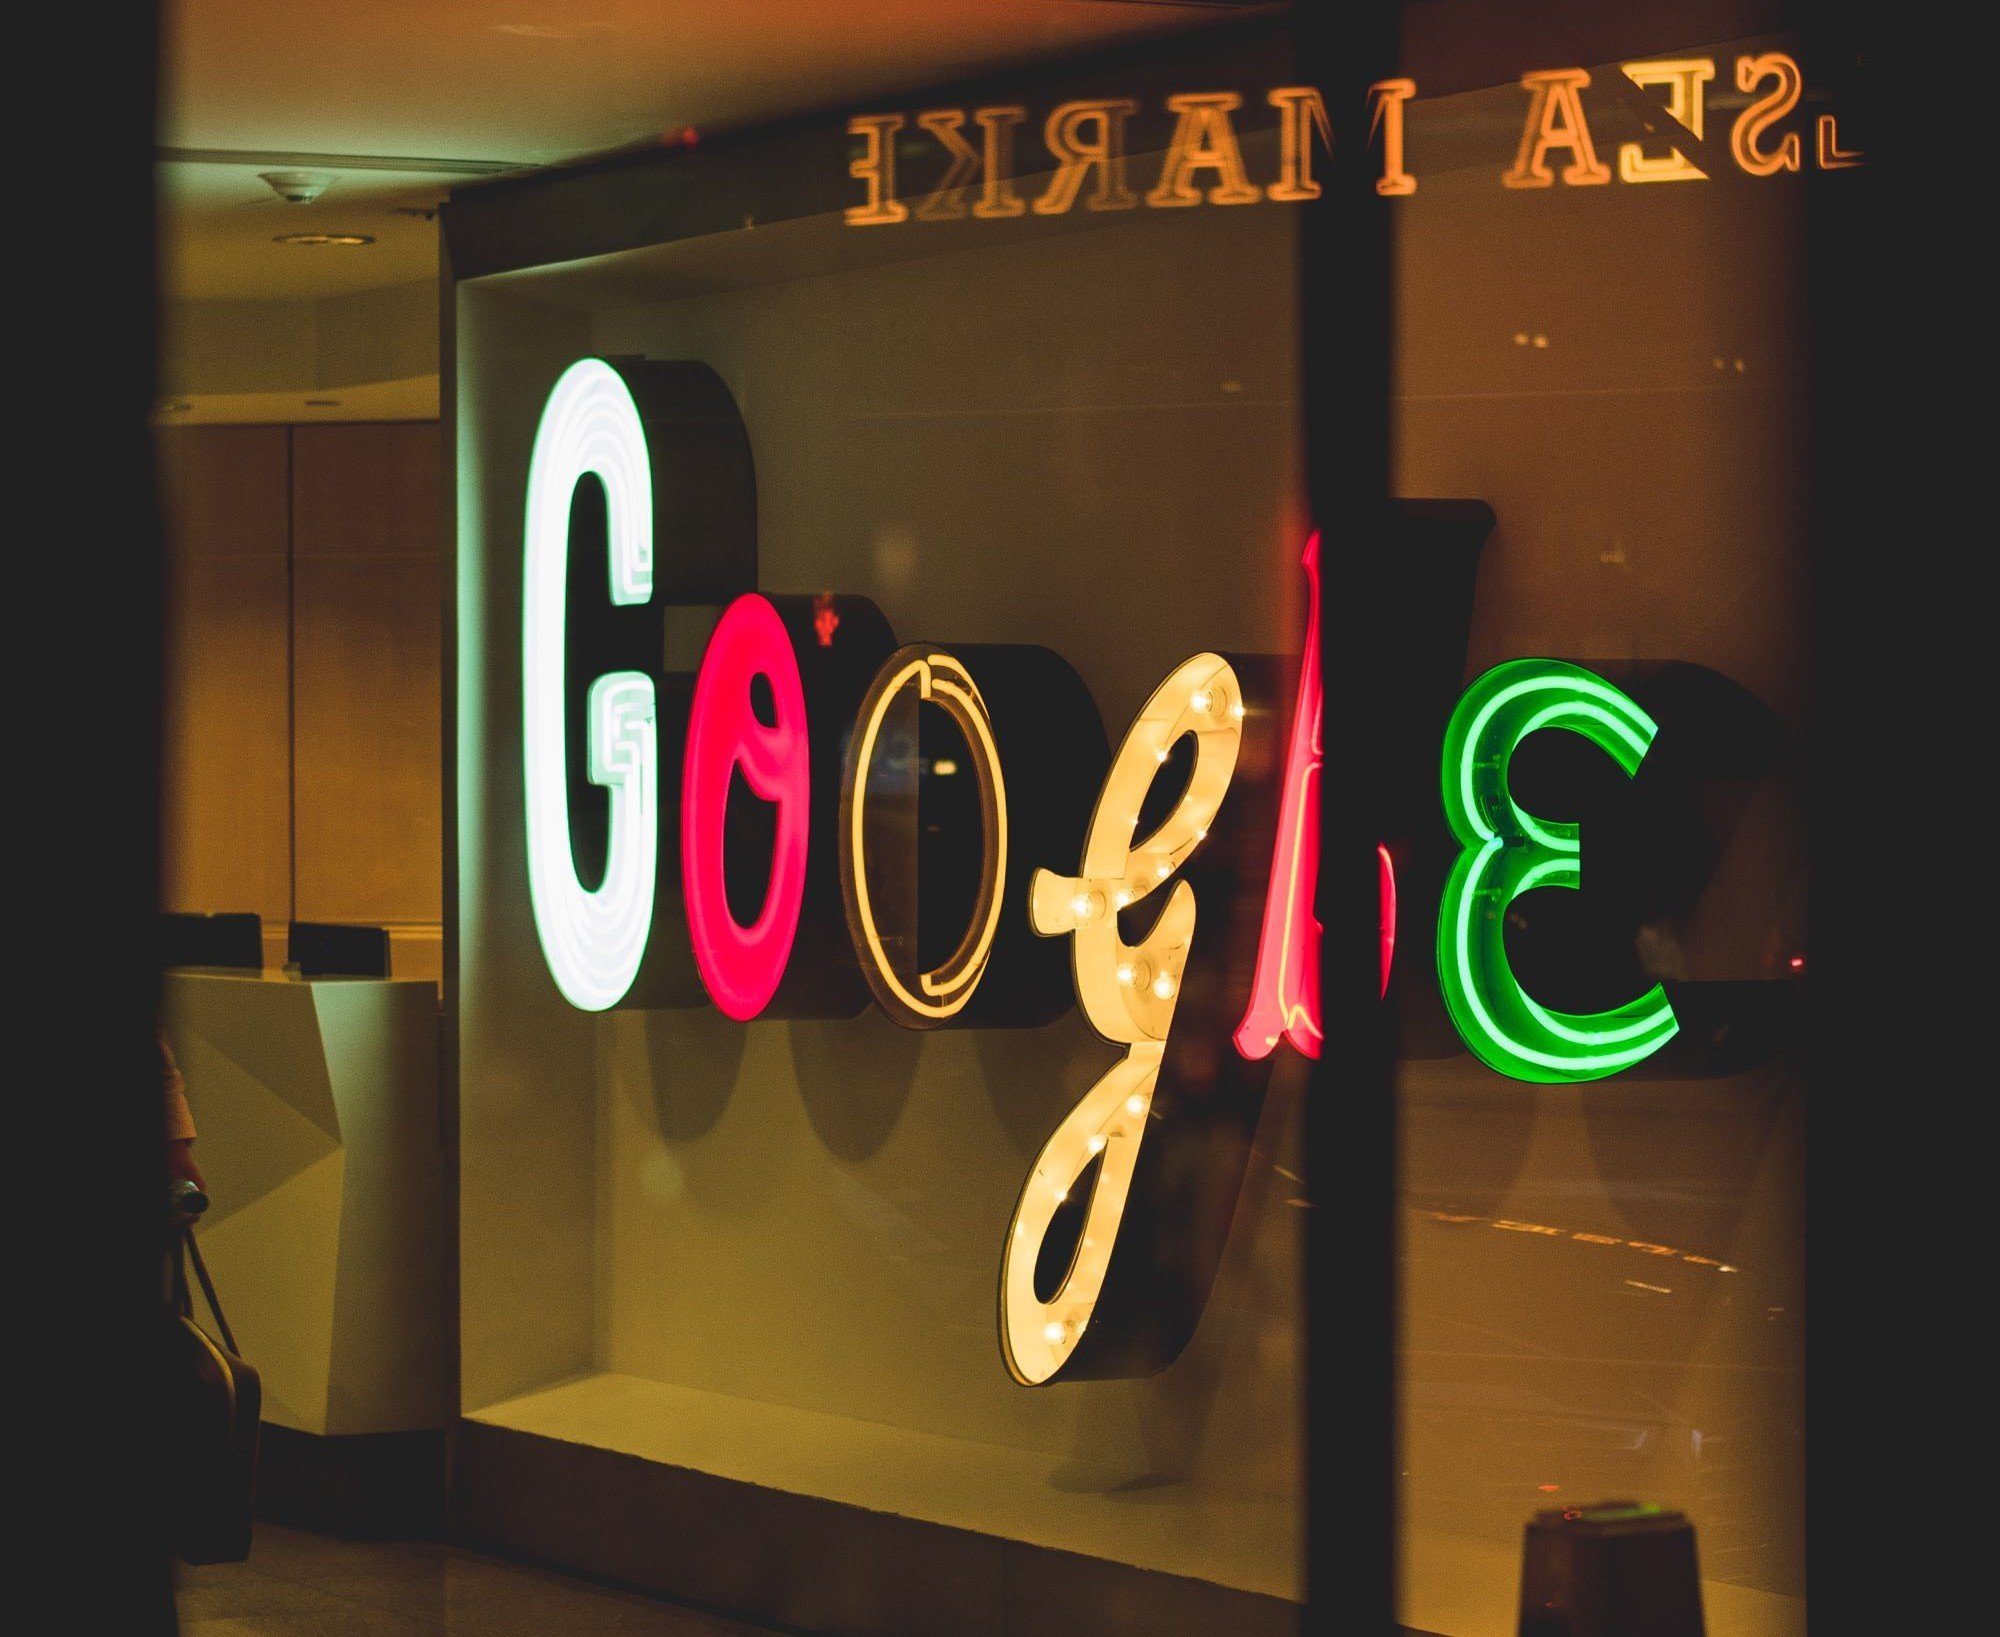 Künstliche Intelligenz im Werbegeschäft: Google plant KI-gesteuerte Anzeigen